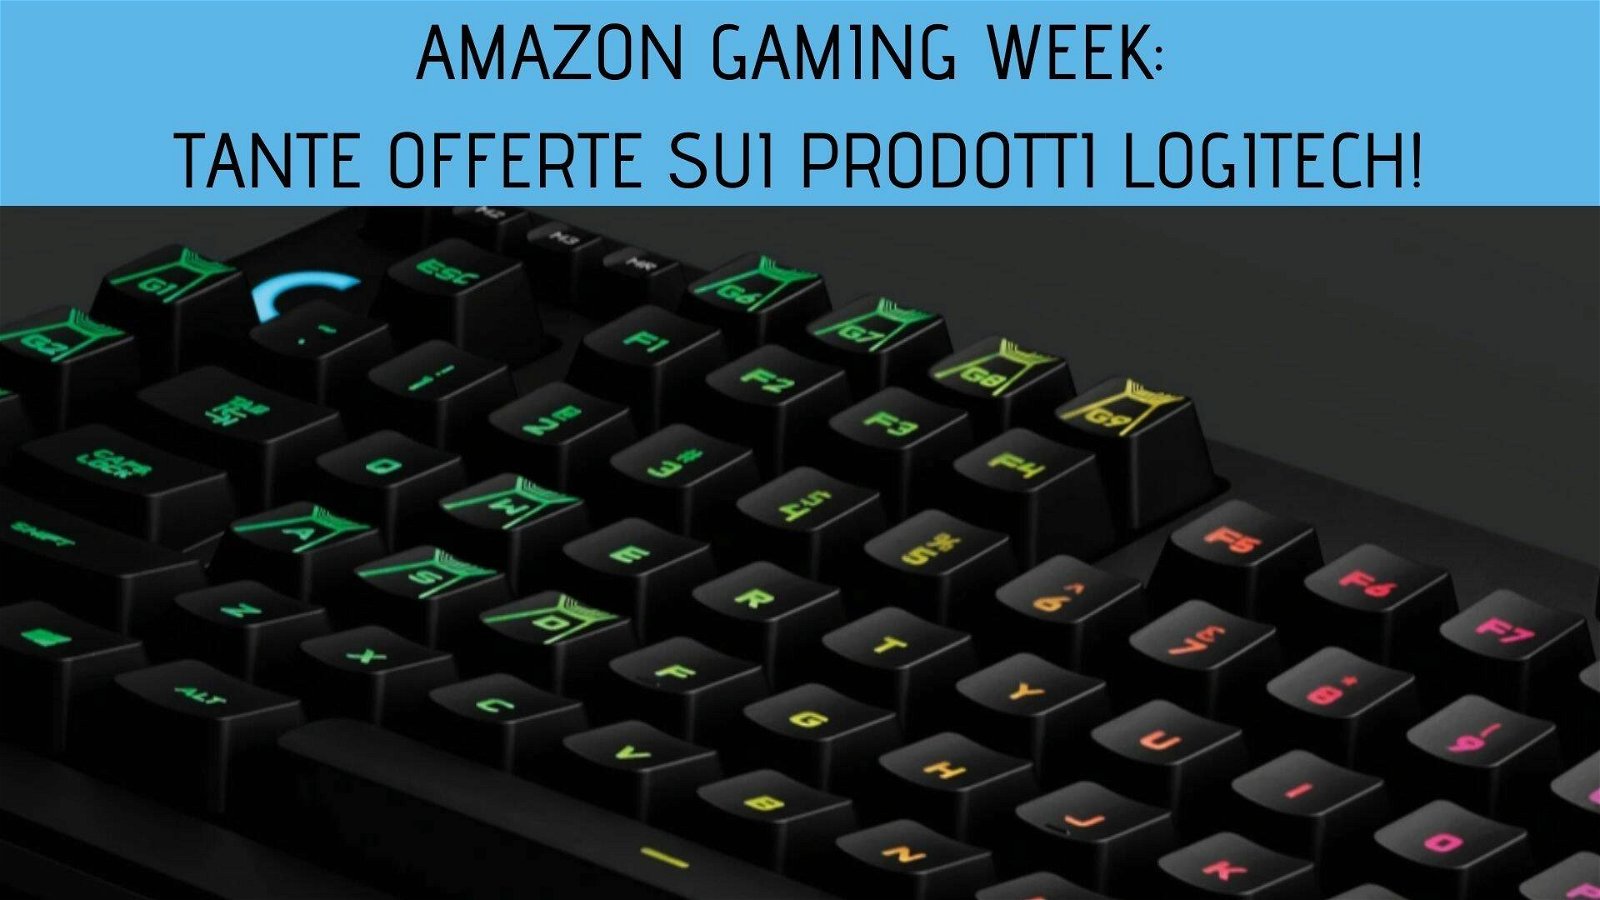 Immagine di Amazon Gaming Week: tante offerte sui prodotti Logitech!